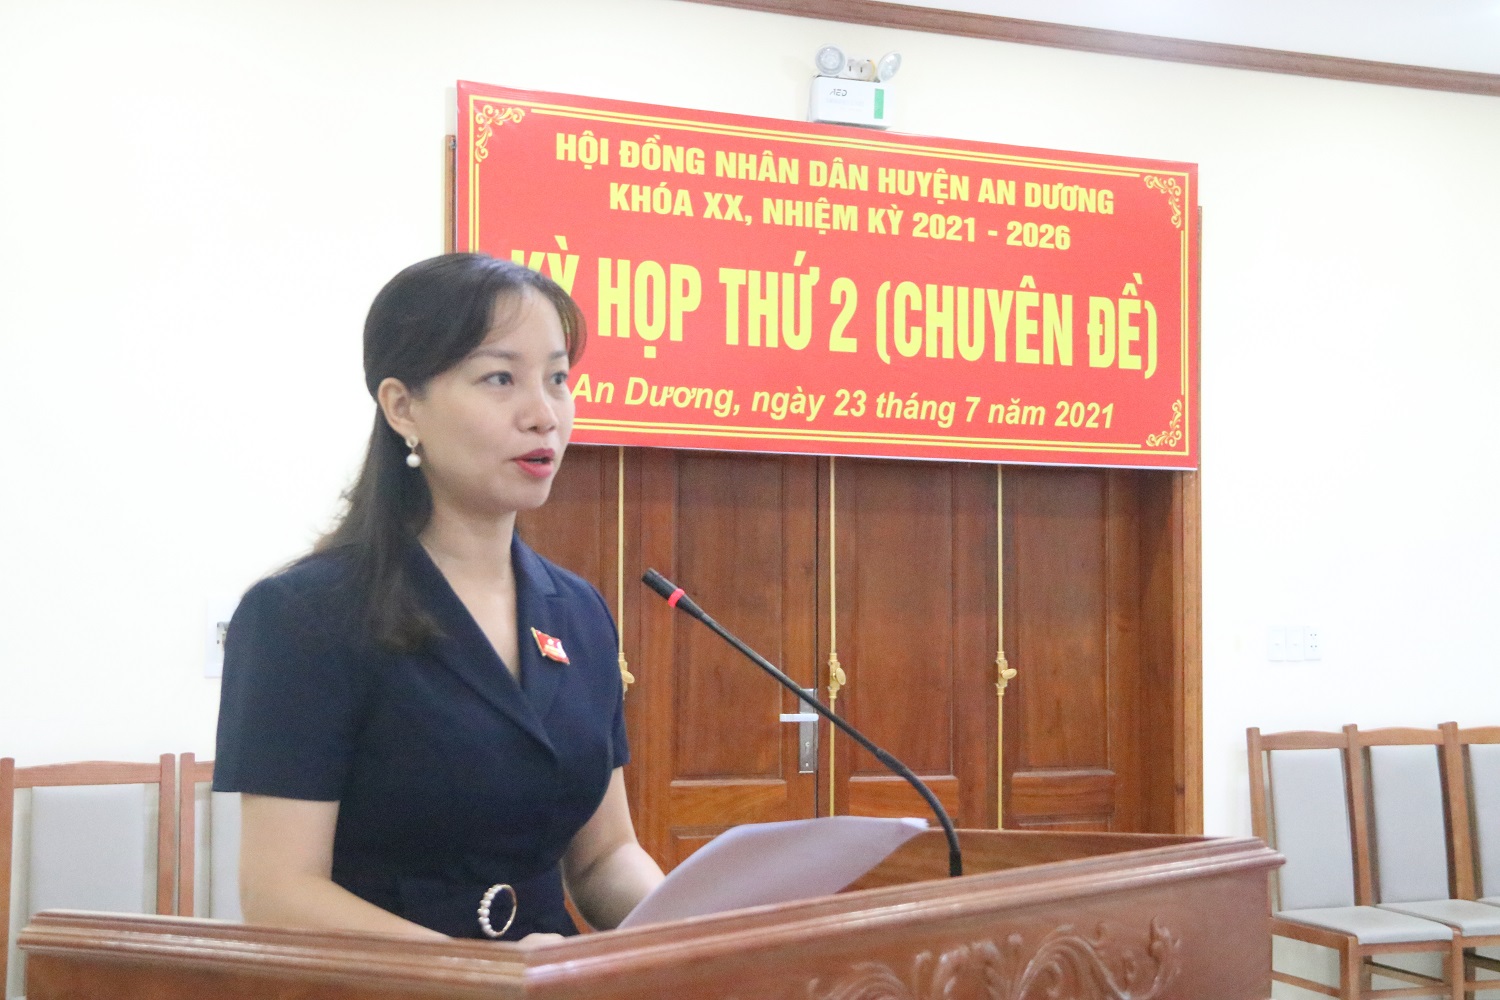 Đồng chí Trần Thị Quỳnh Trang, Thành ủy viên, Bí thư Huyện ủy dự và phát biểu chỉ đạo kỳ họp